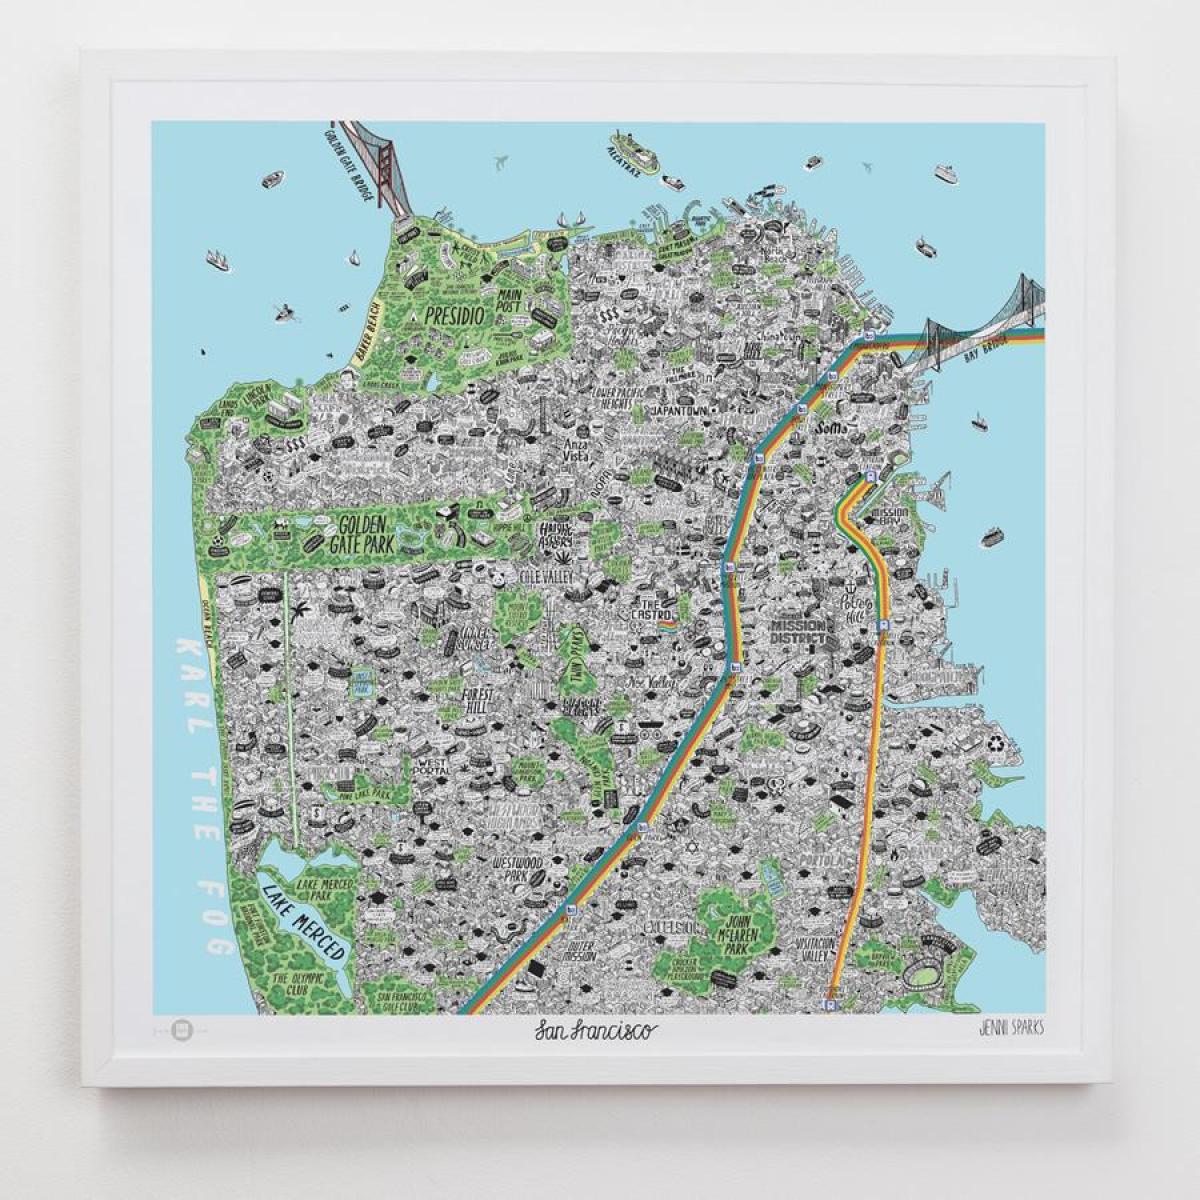 Harta de artă din San Francisco